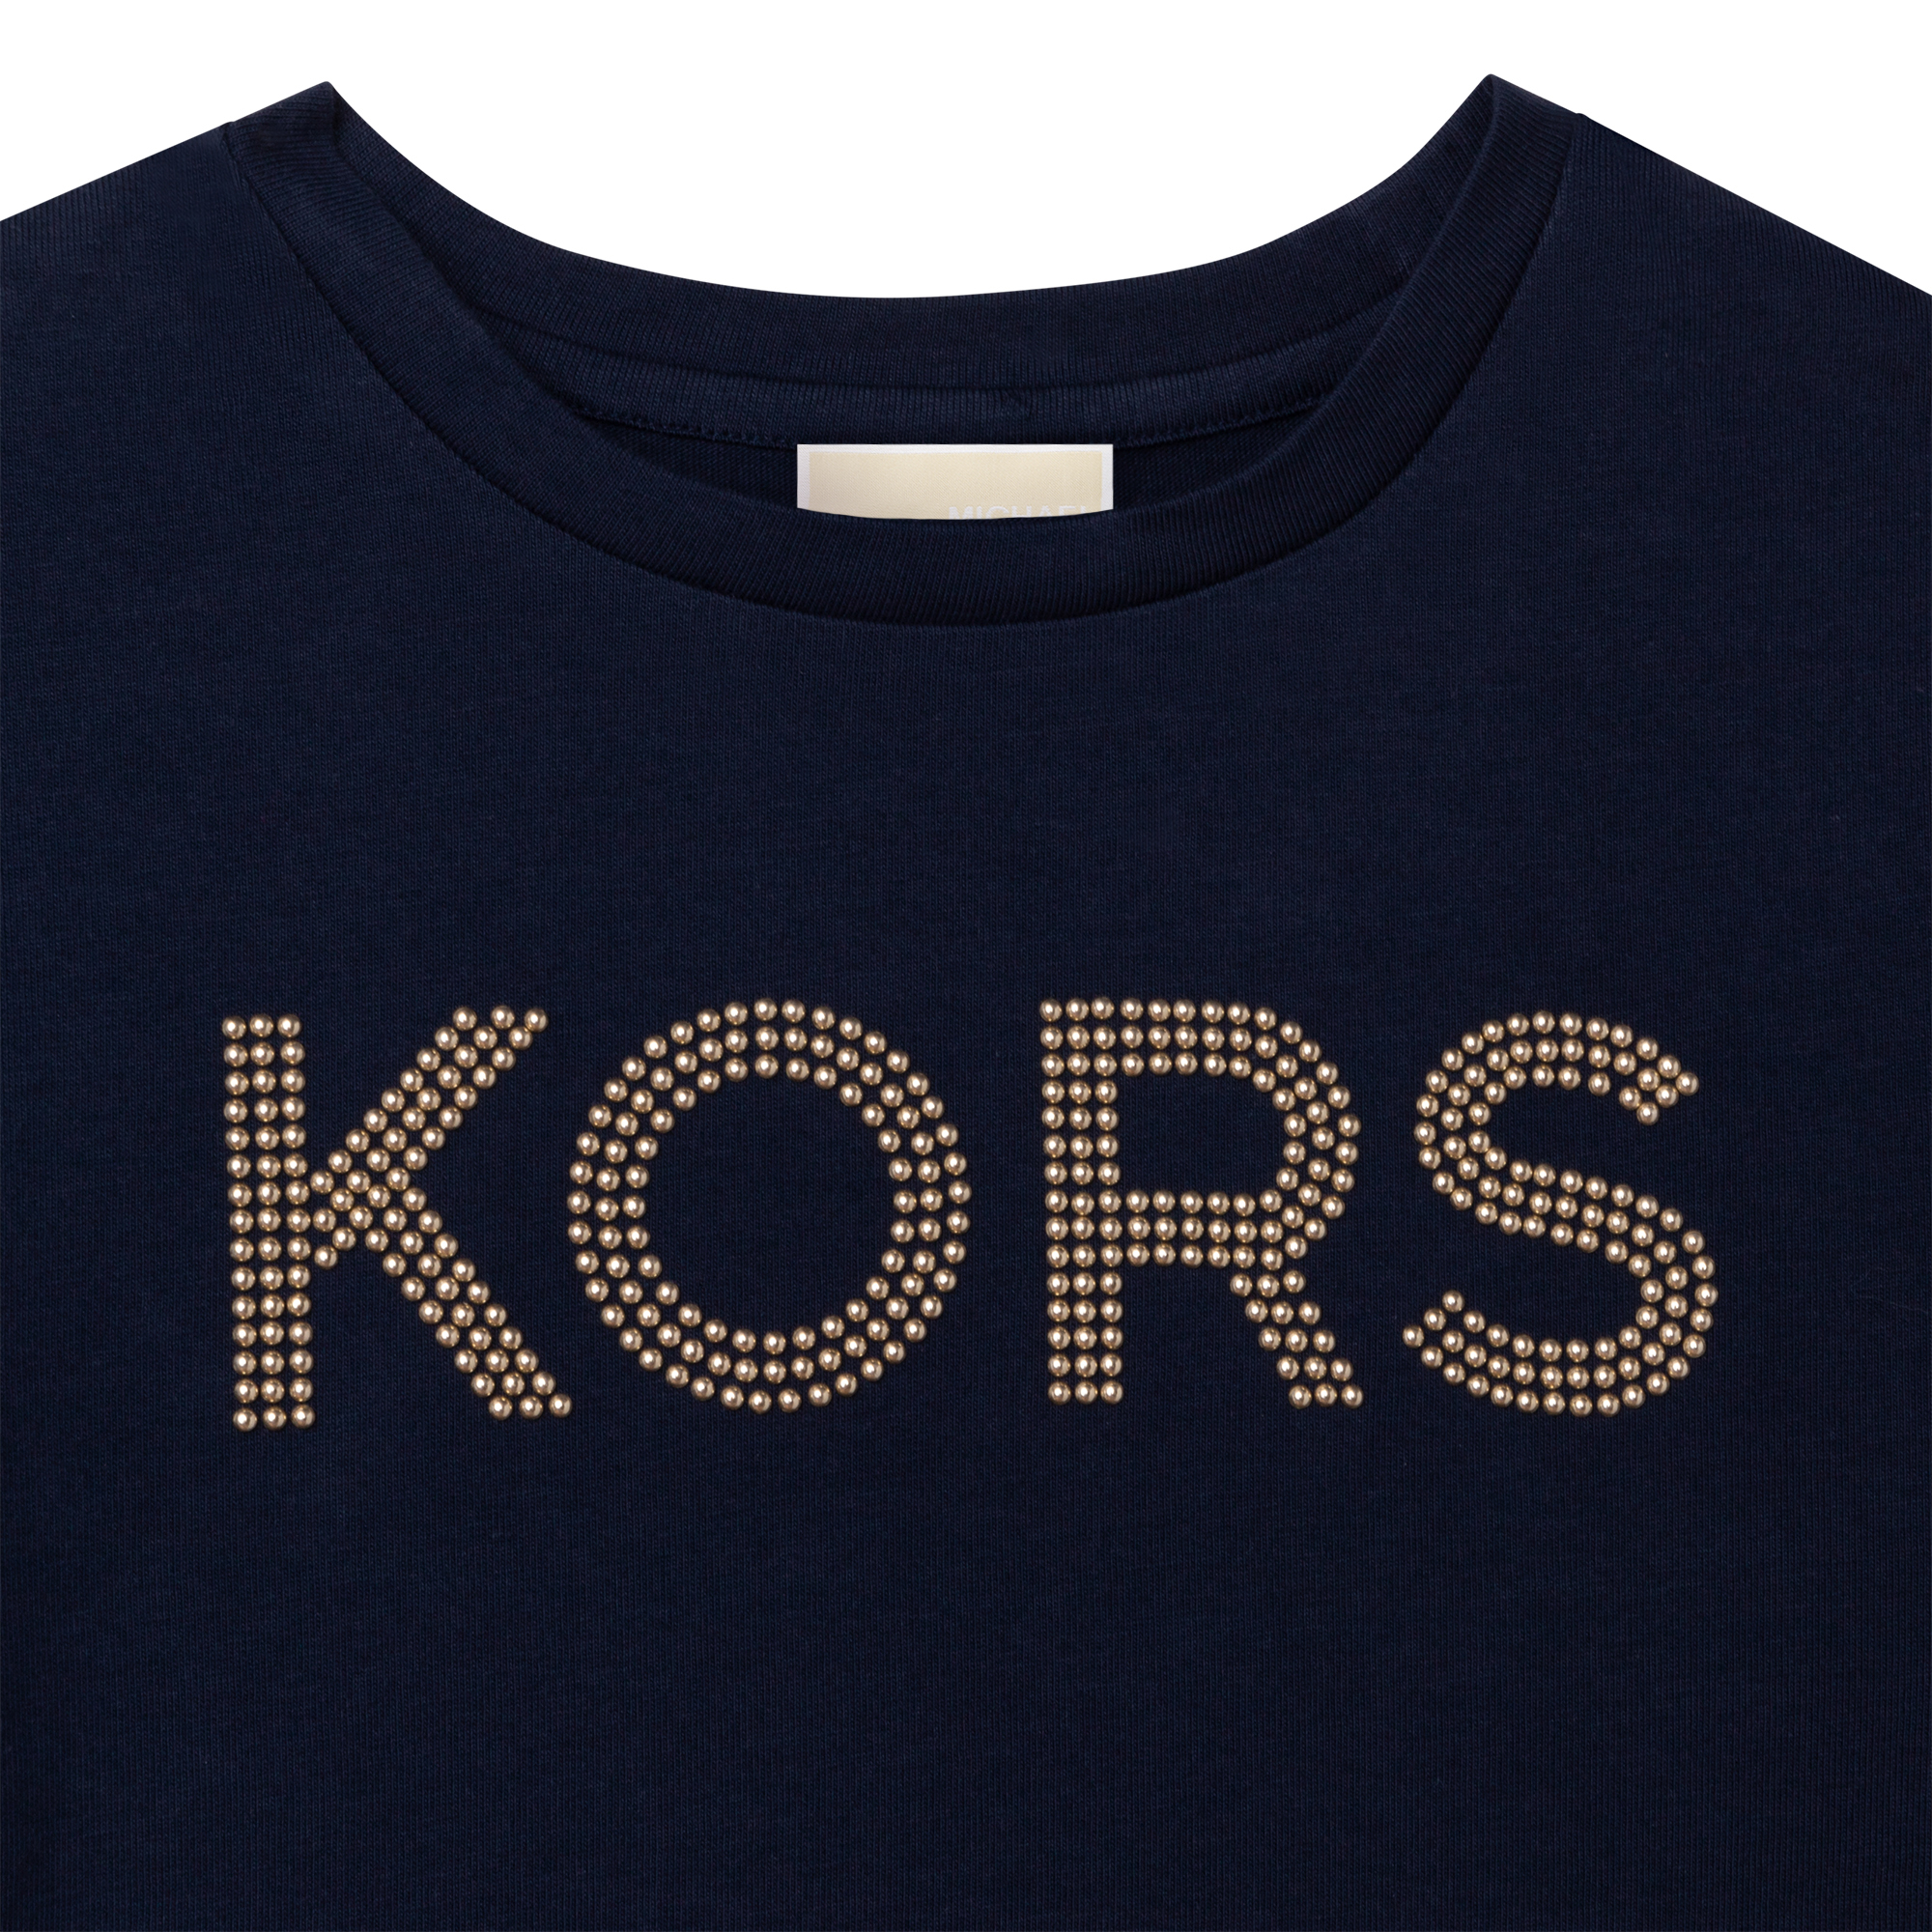 Short-sleeved t-shirt MICHAEL KORS for GIRL